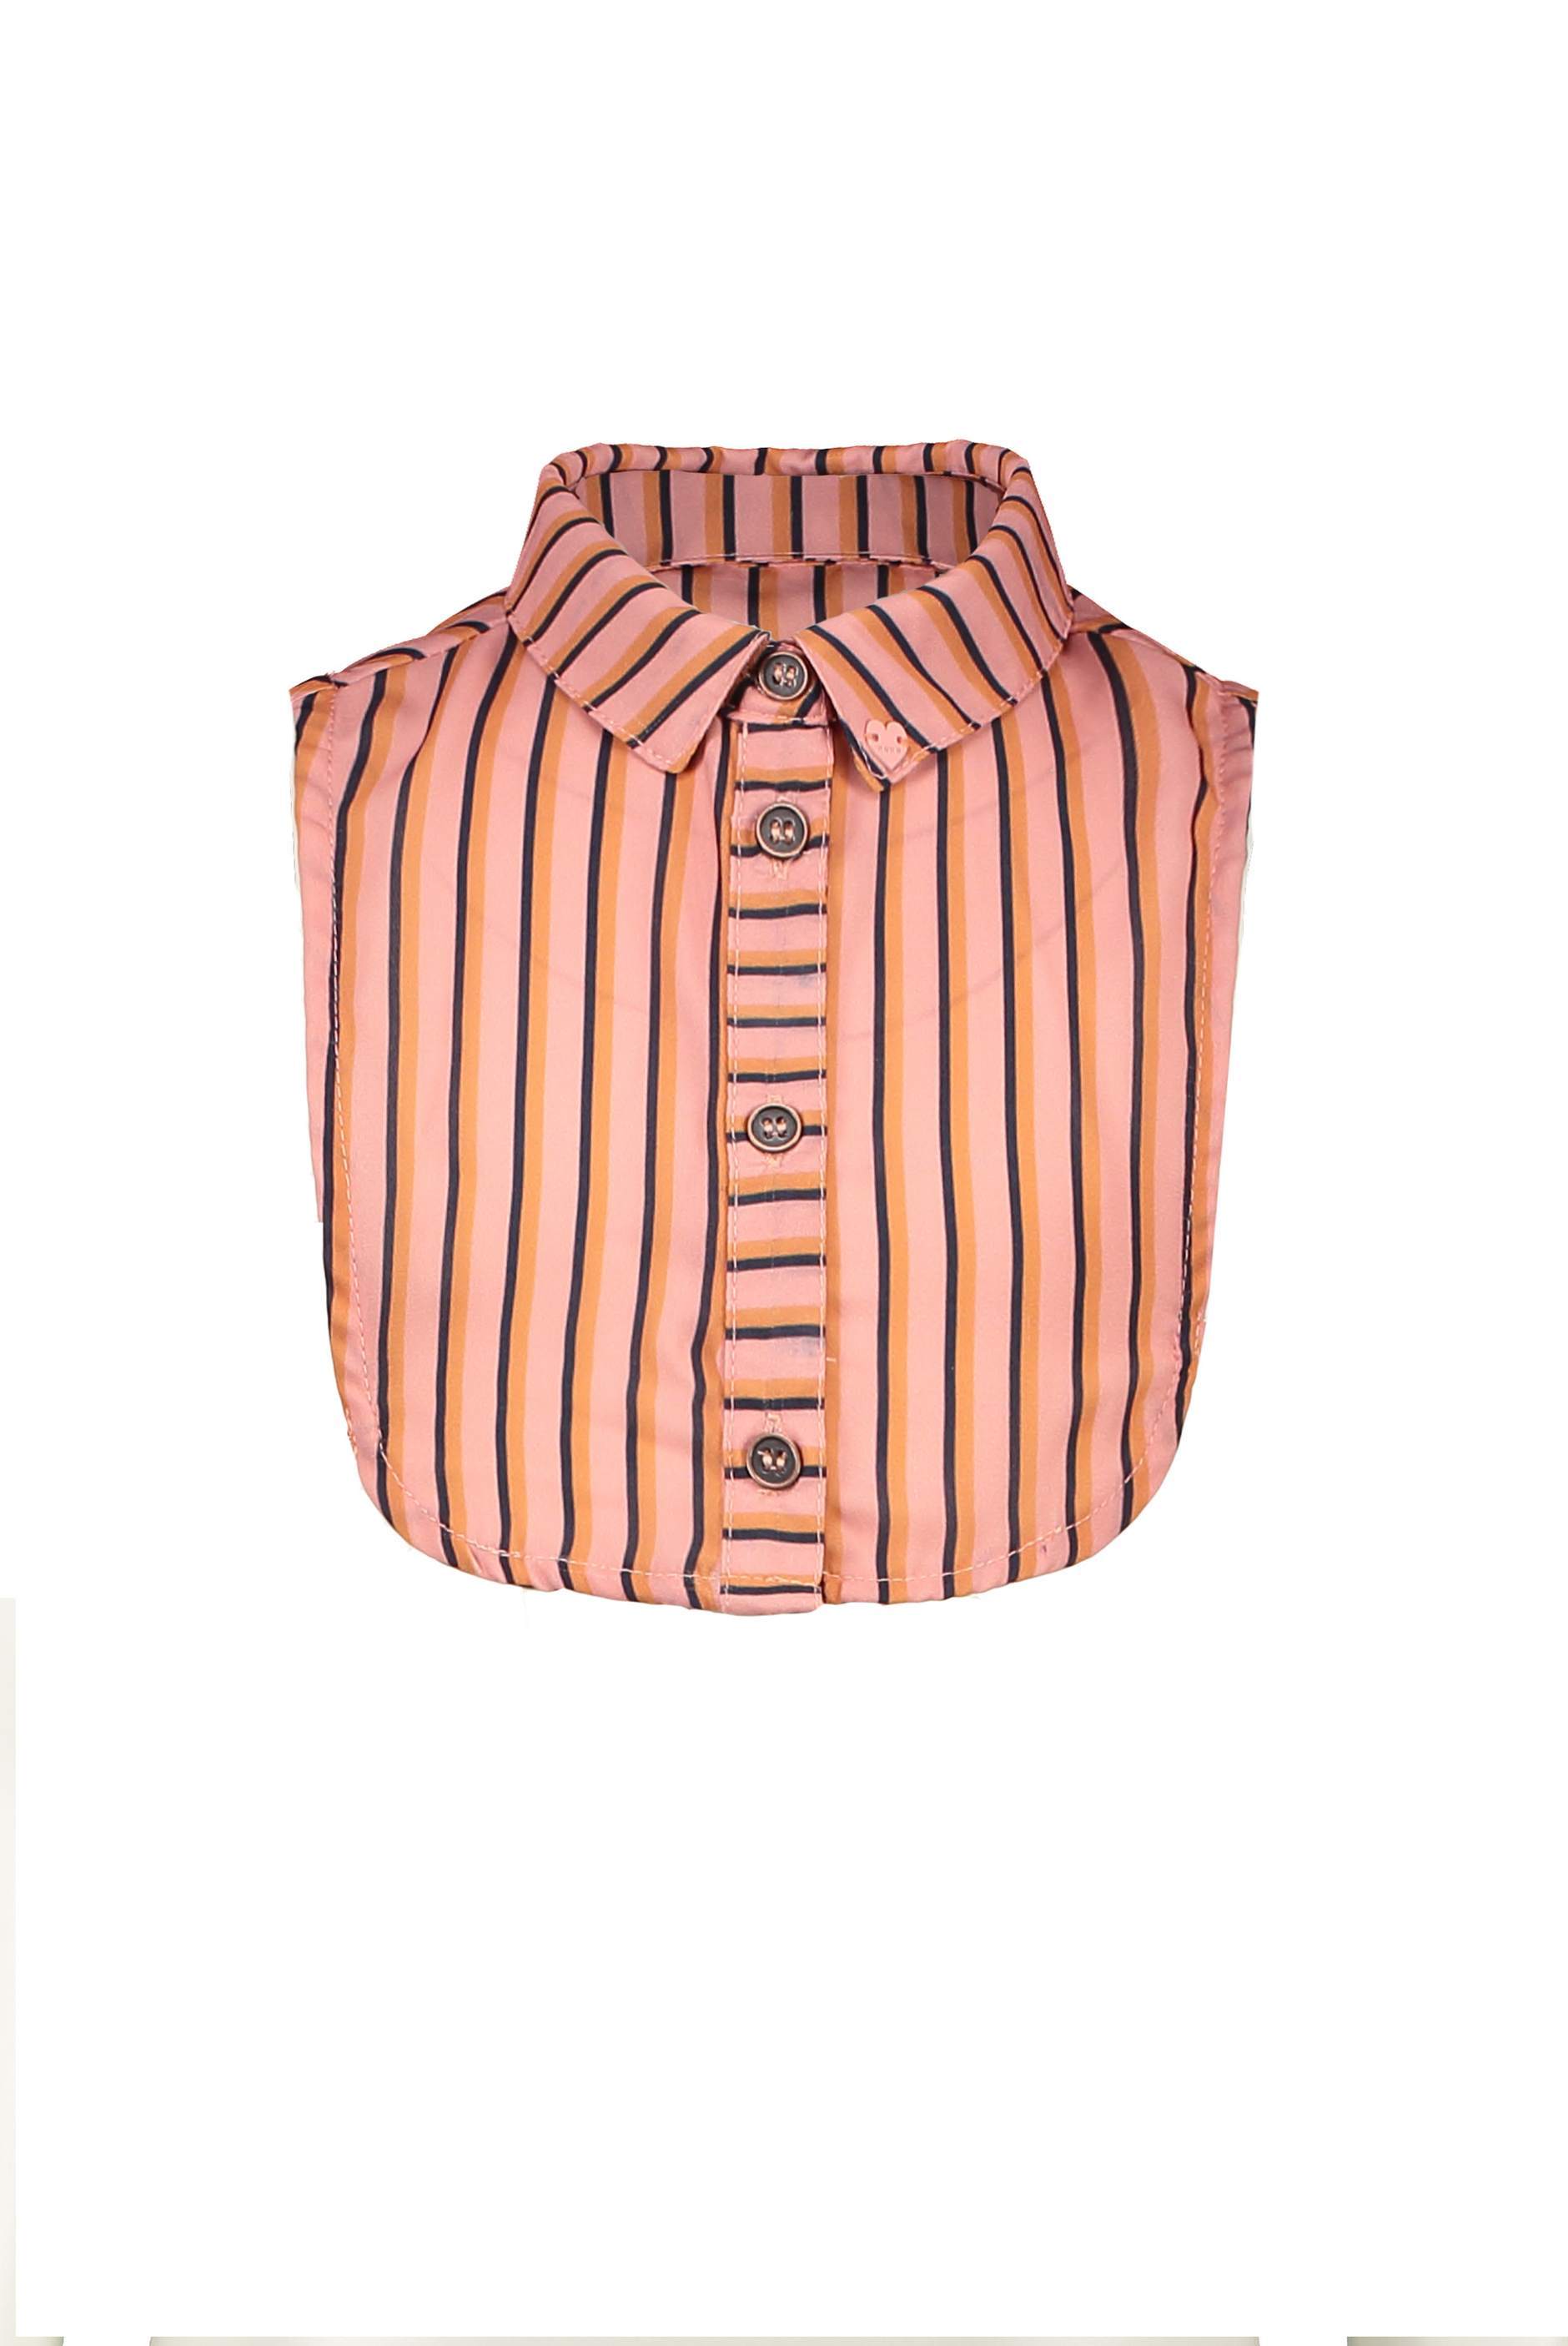 Meisjes Lea B collar with stripes AOP van NoNo in de kleur Lychee in maat 134/164.